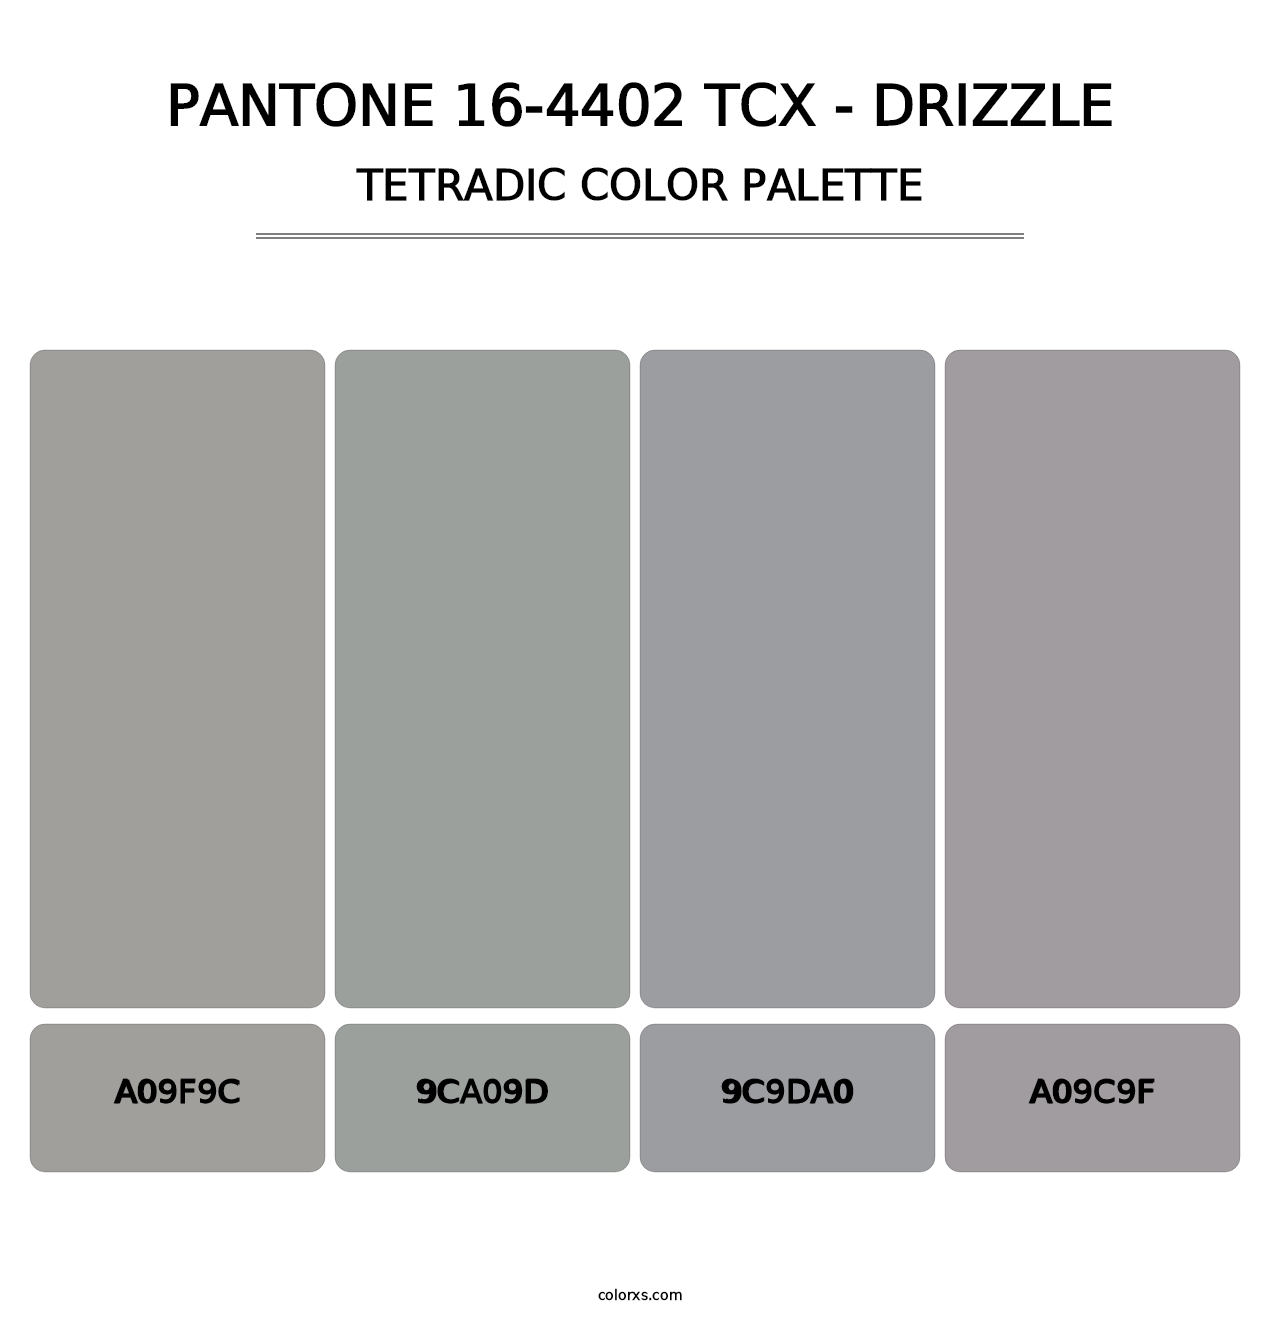 PANTONE 16-4402 TCX - Drizzle - Tetradic Color Palette